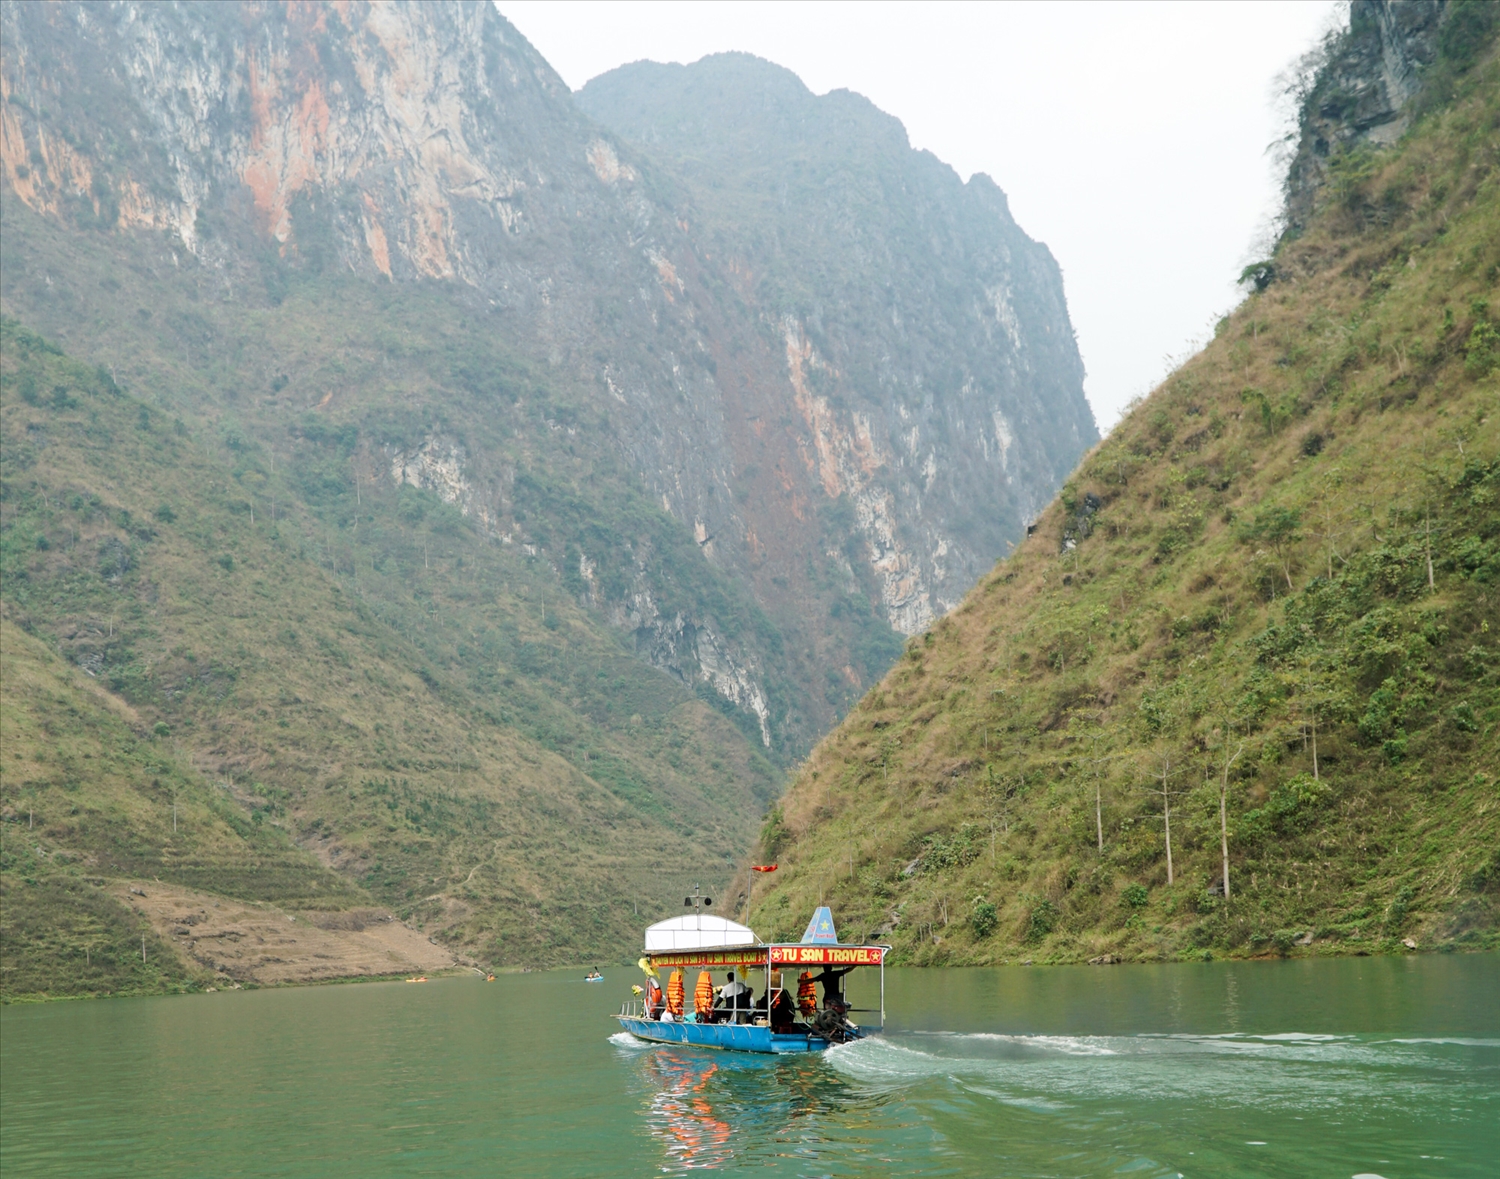 Sau khi thủy điện chặn dòng, sông Nho Quế trở nên tĩnh lặng hơn, người dân mới bắt đầu cho thuyền máy đưa đón du khách đến tận chân vách núi